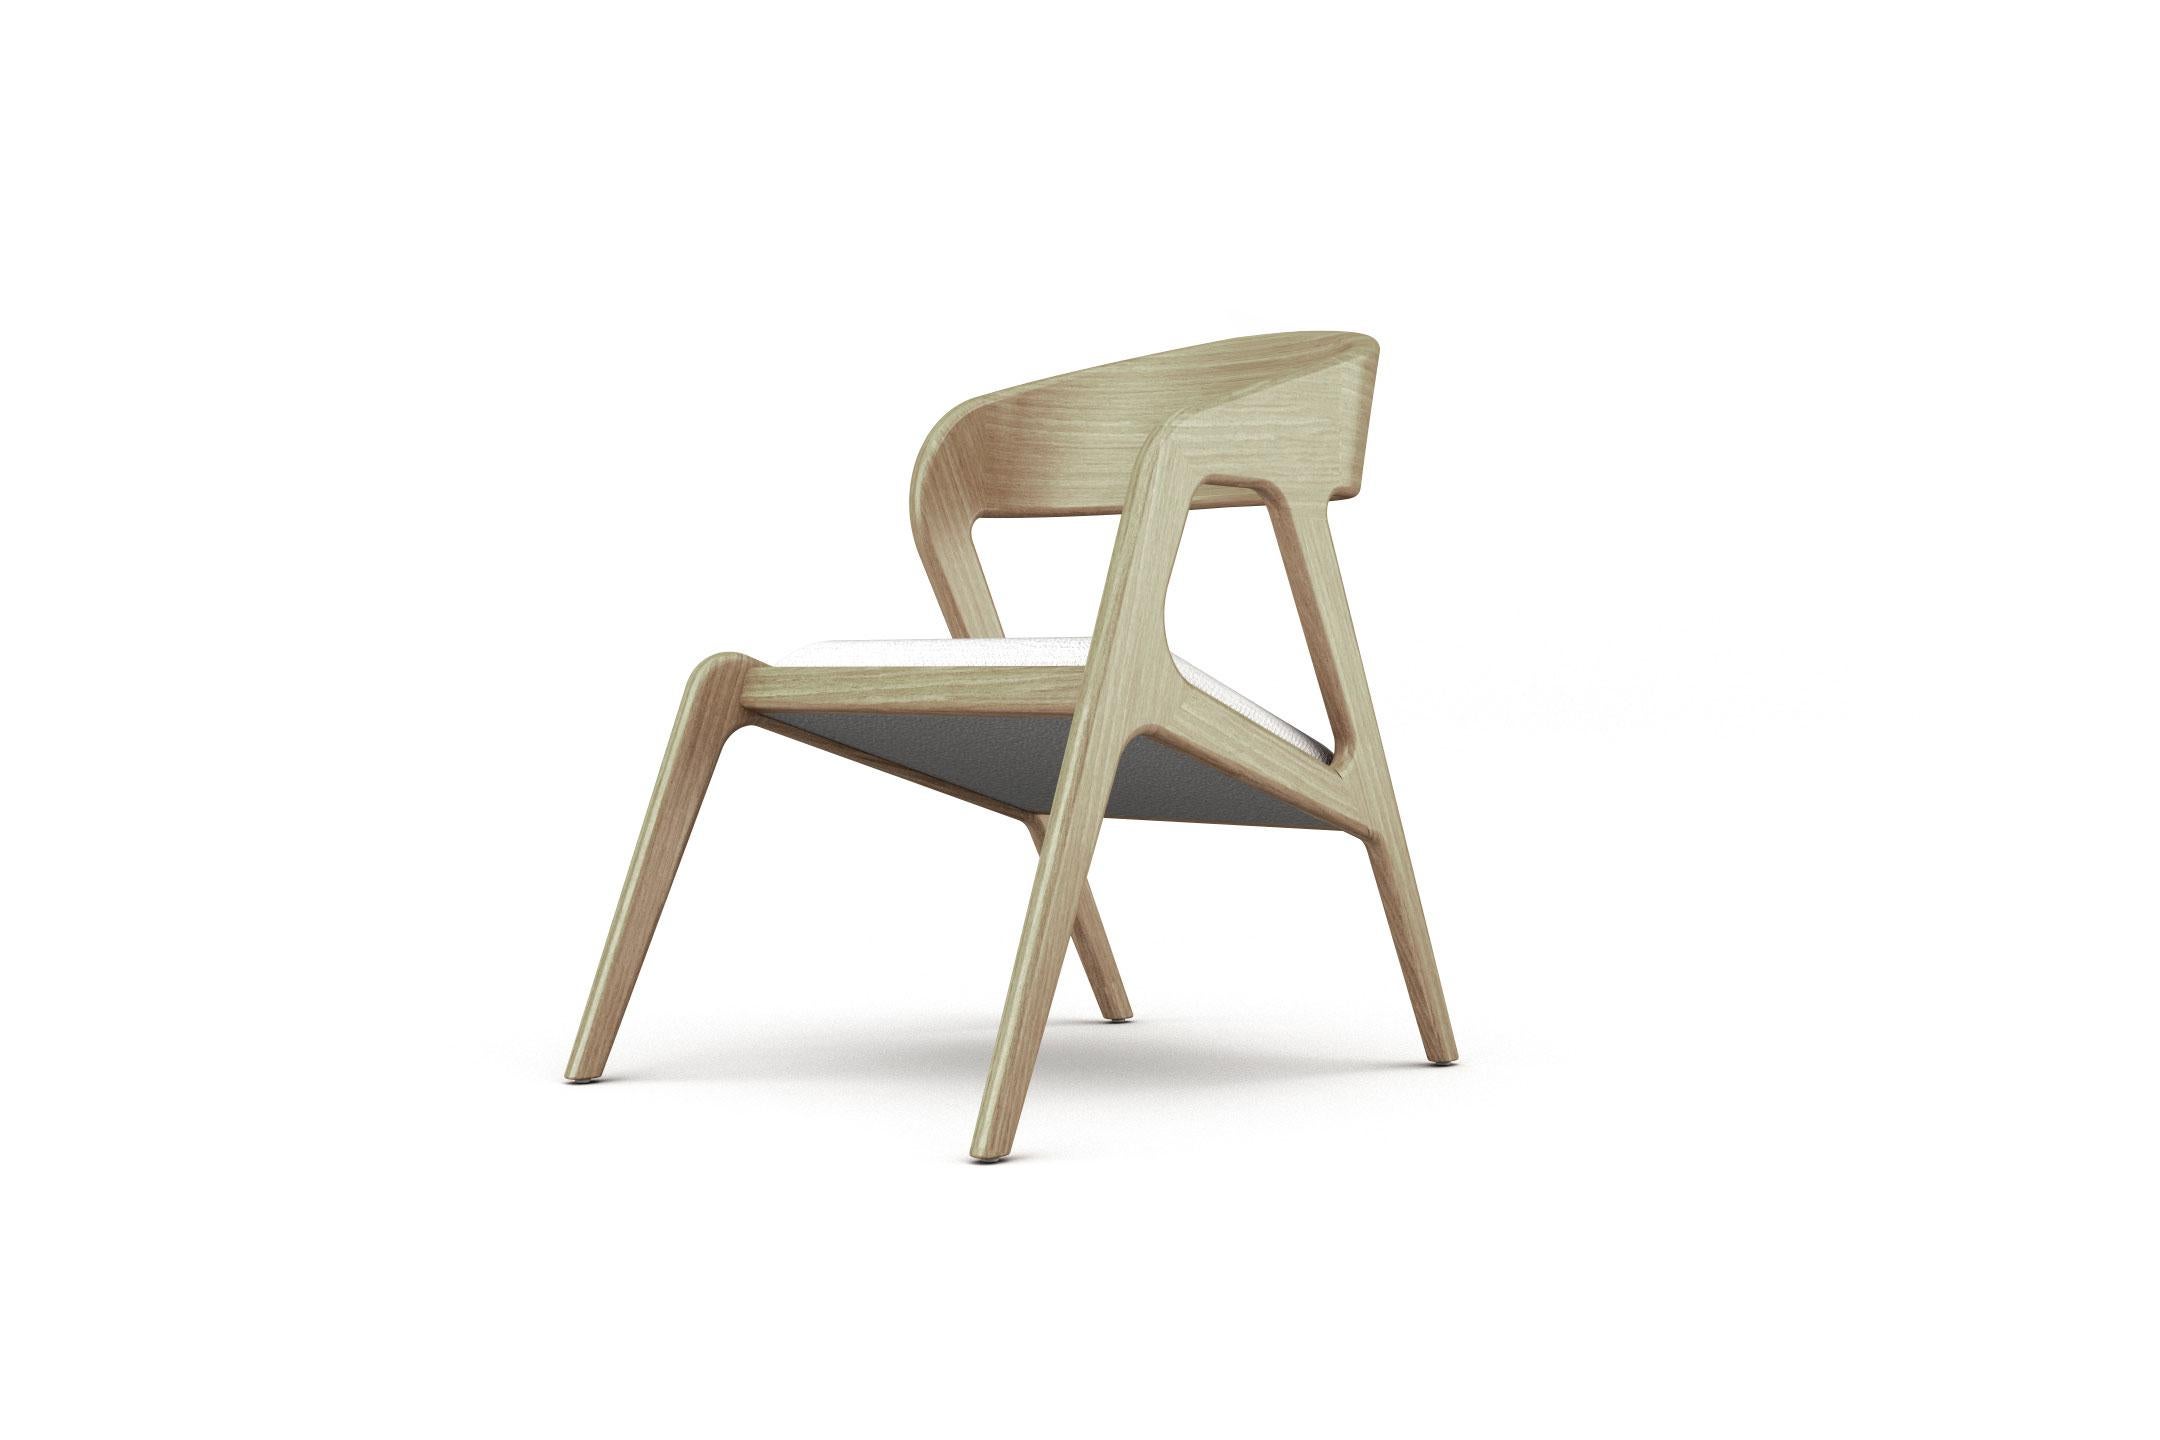 Das Design des Sessels Seville ist mit beweglichen und geschwungenen Konturen gestaltet, die ihm eine unausgesprochene Anmut verleihen. Seine Struktur besteht aus gebogenem Sperrholzfurnier mit einem gepolsterten Schaumstoffsitz, der von unserem